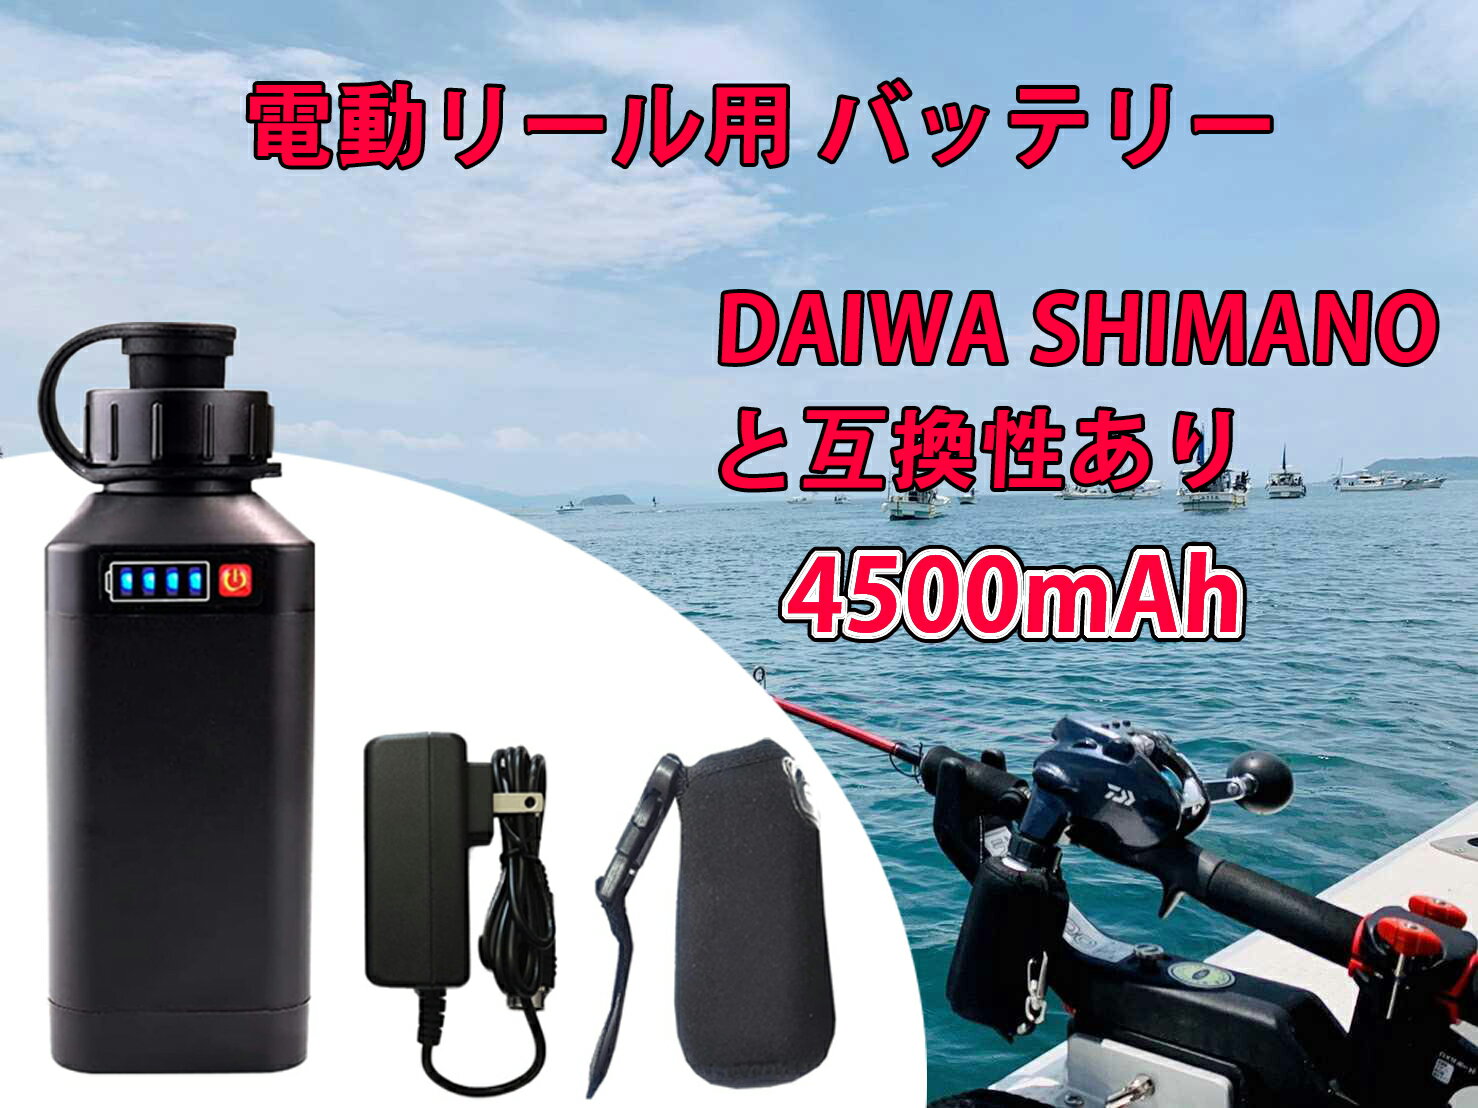 【公式】電動リール用 バッテリー 4500mAh LED電量表示付き 船釣り 電動ジギング用 バッテリー DAIWA SHIMANOと互換性あり